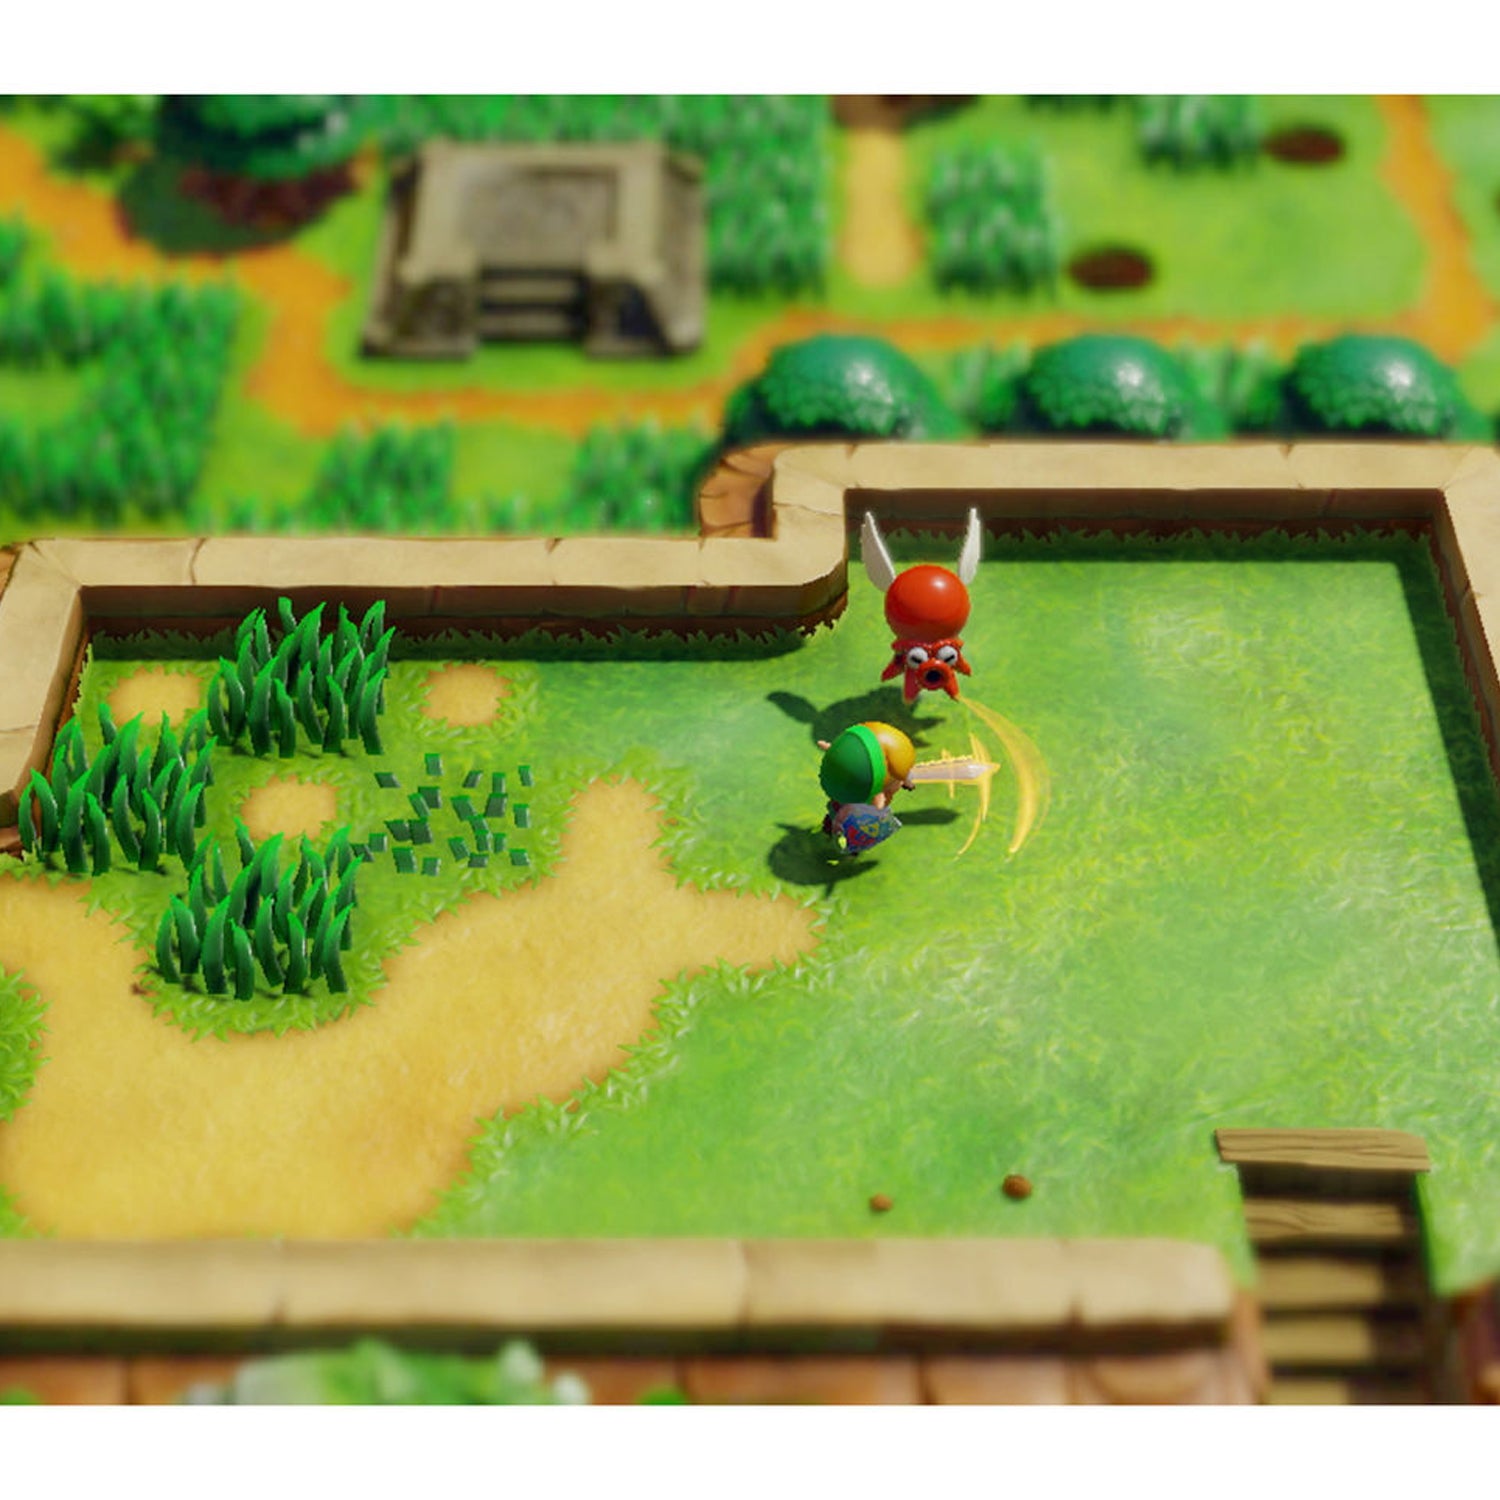 Nintendo The Legend of Zelda: Links Awakening Bundle with Mario Kart 8 Deluxe